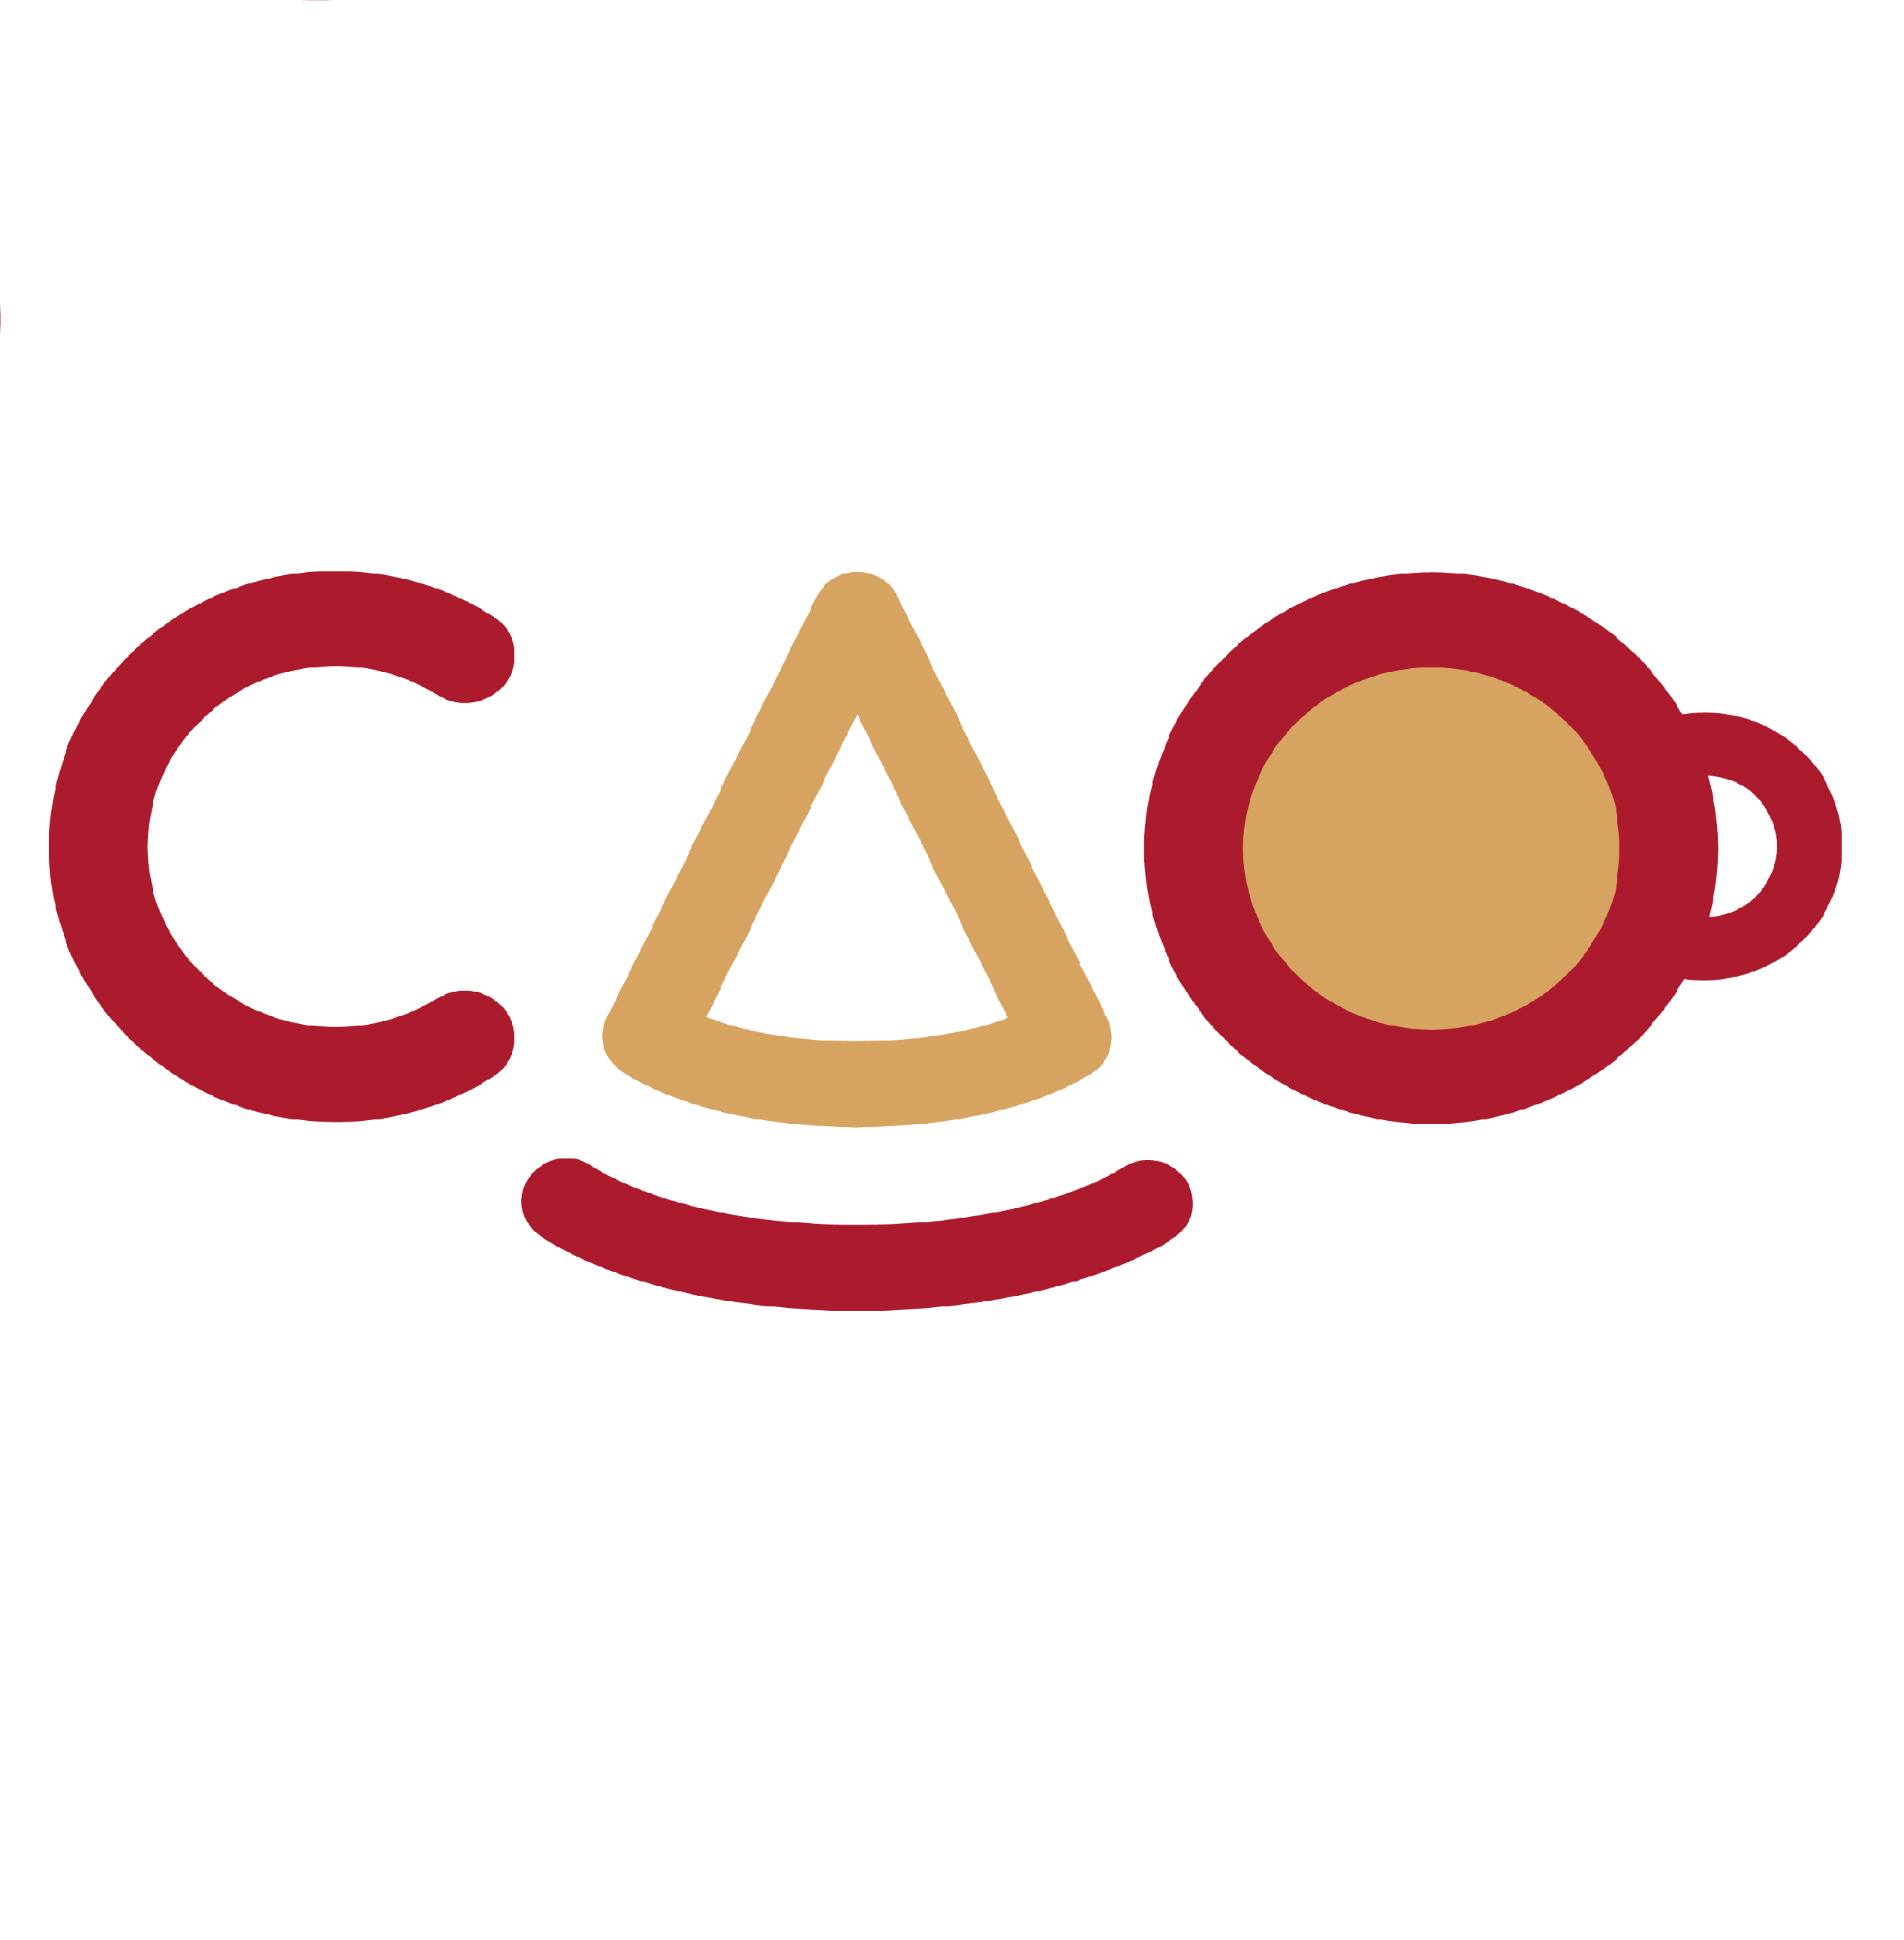 CAO Bakery and Cafe logo